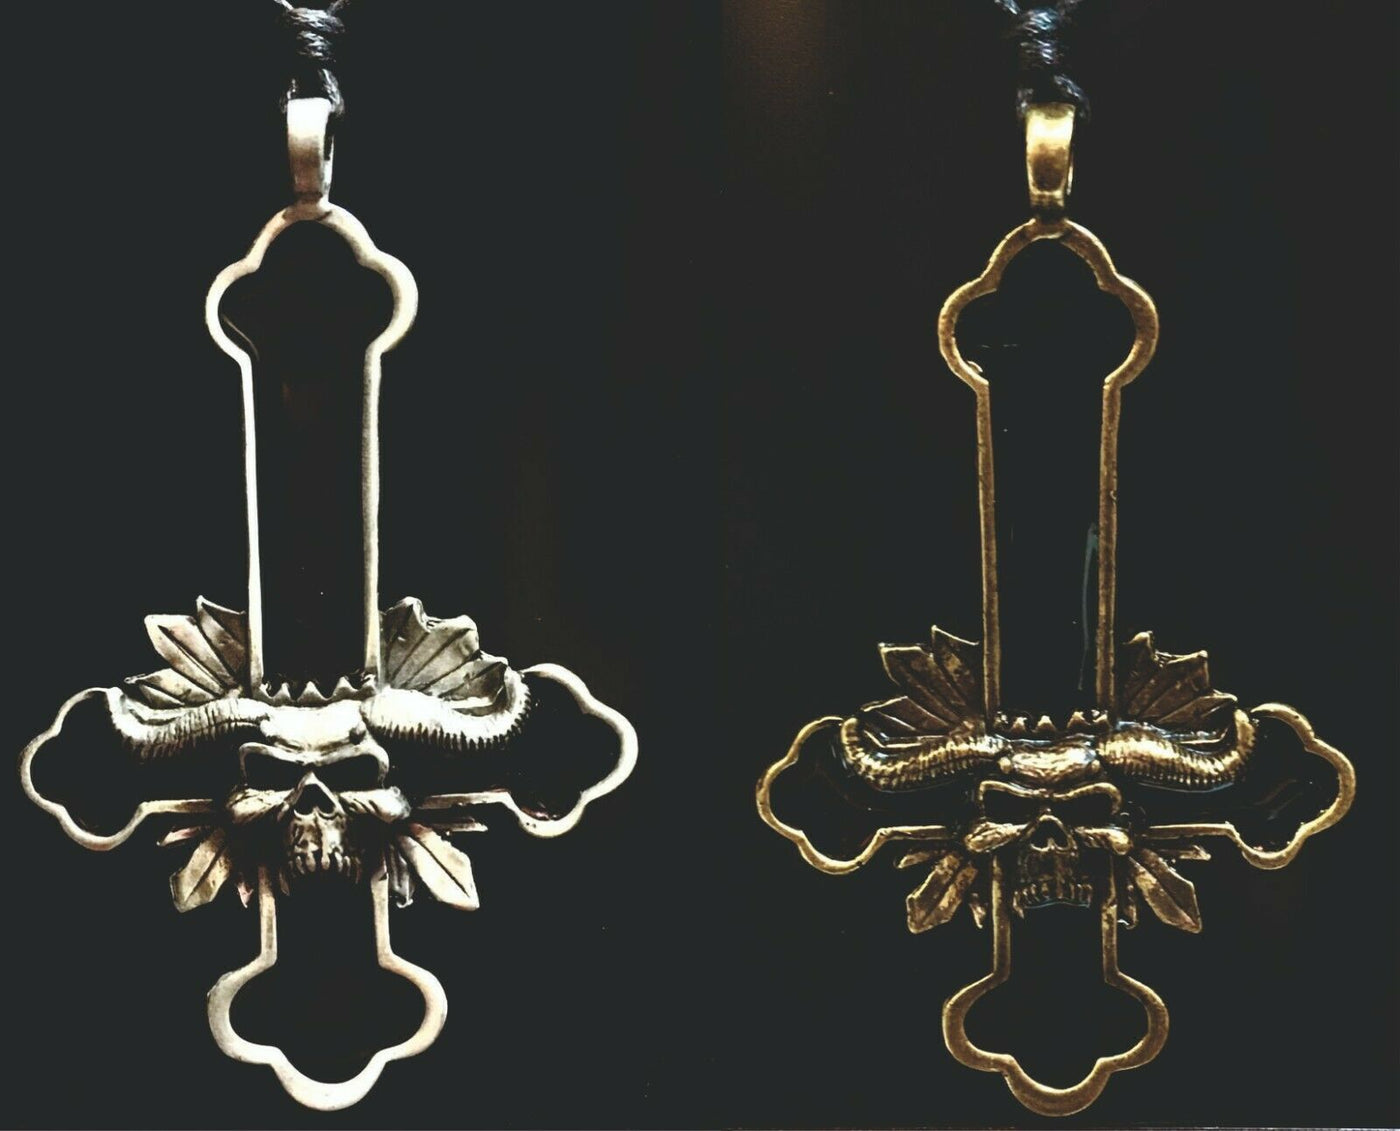 Danzig Samhain Cross Skull Pendant - Bronze or Pewter - Small